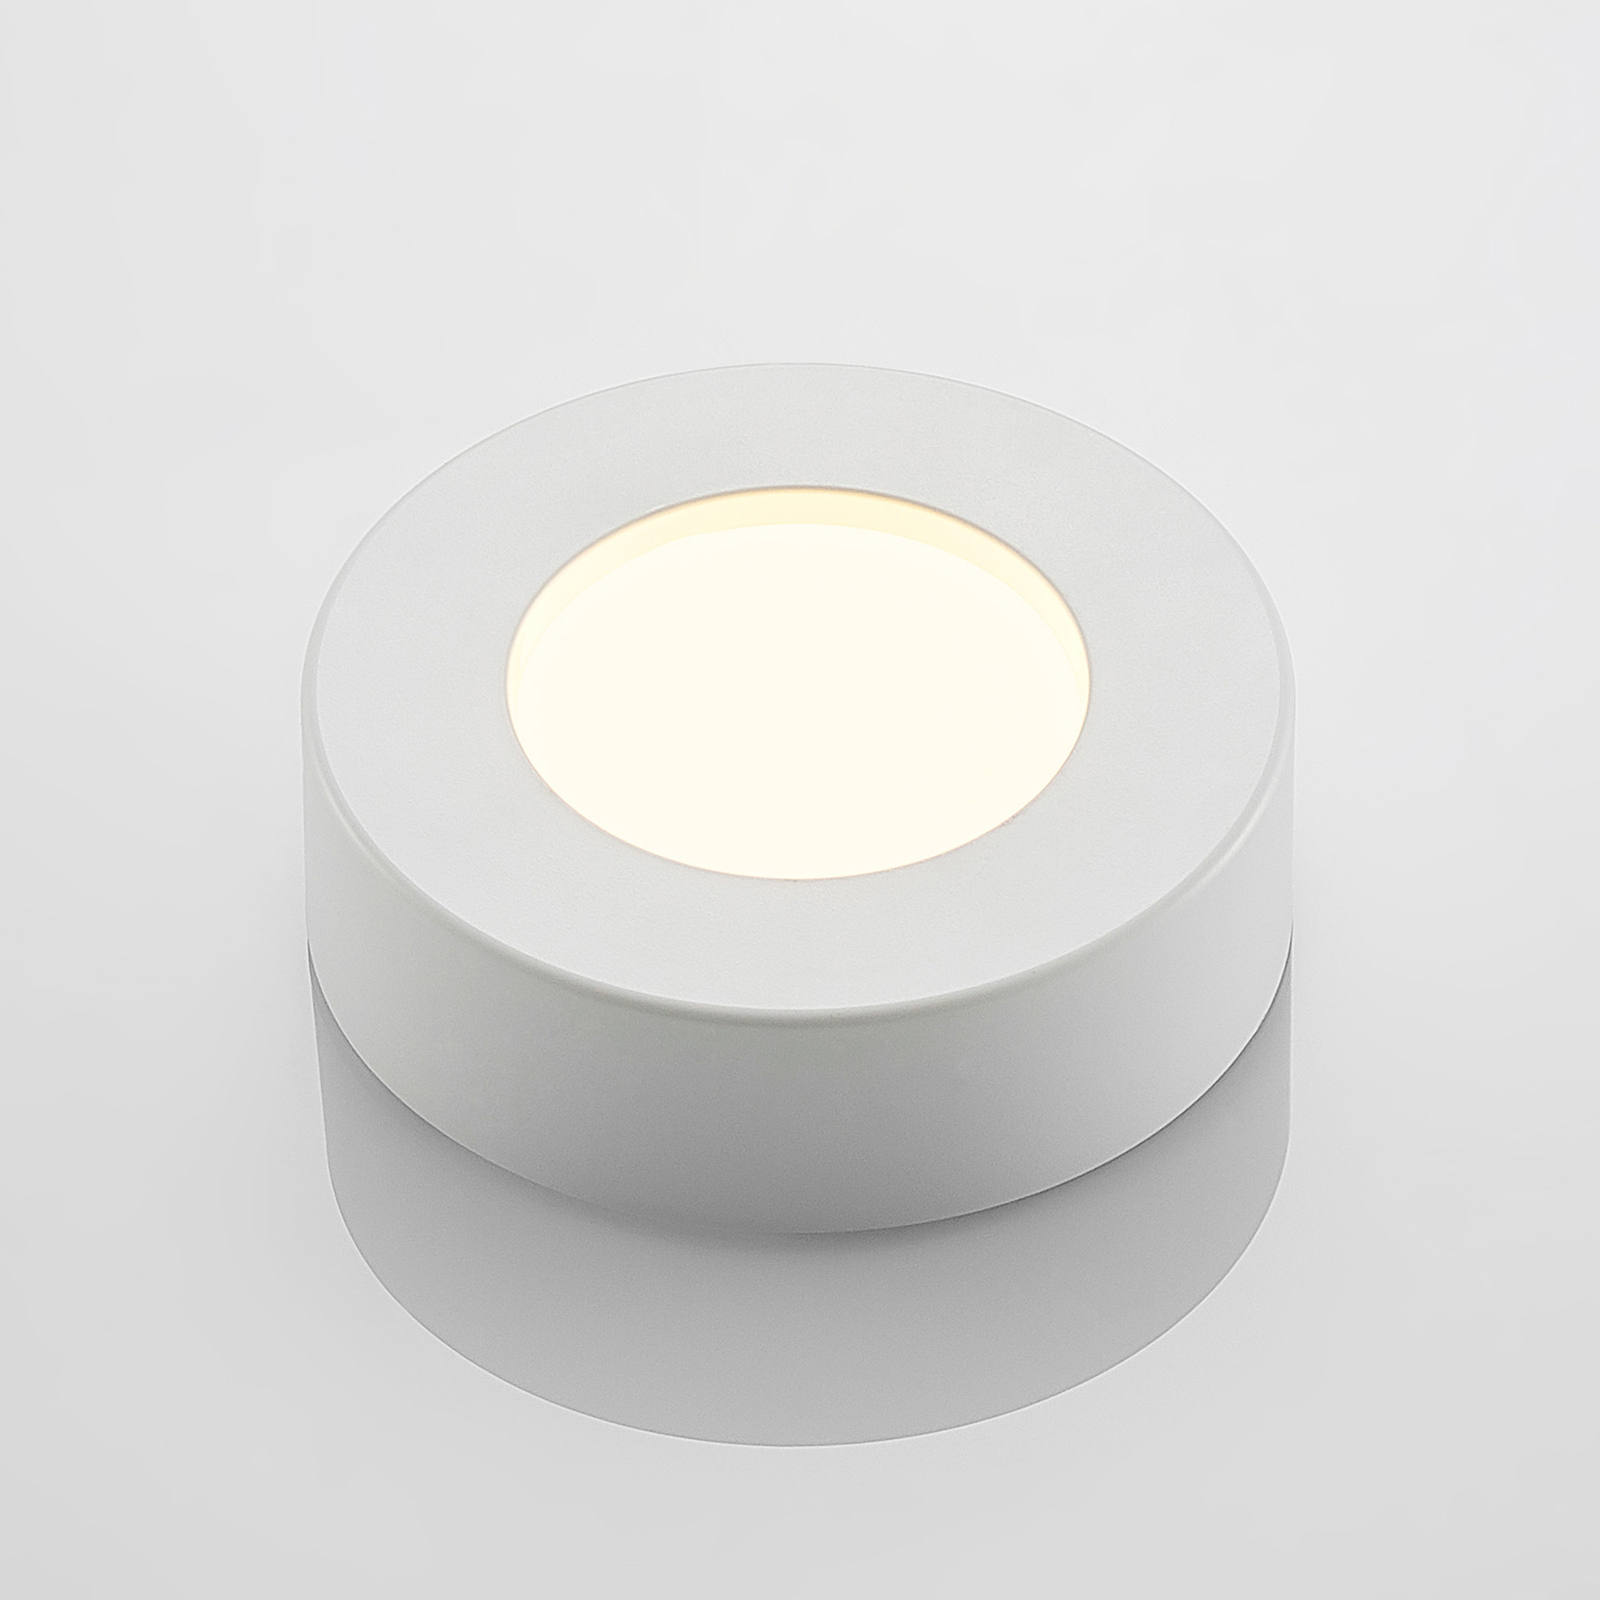 Prios Edwina LED-Deckenleuchte, weiß, 12,2 cm